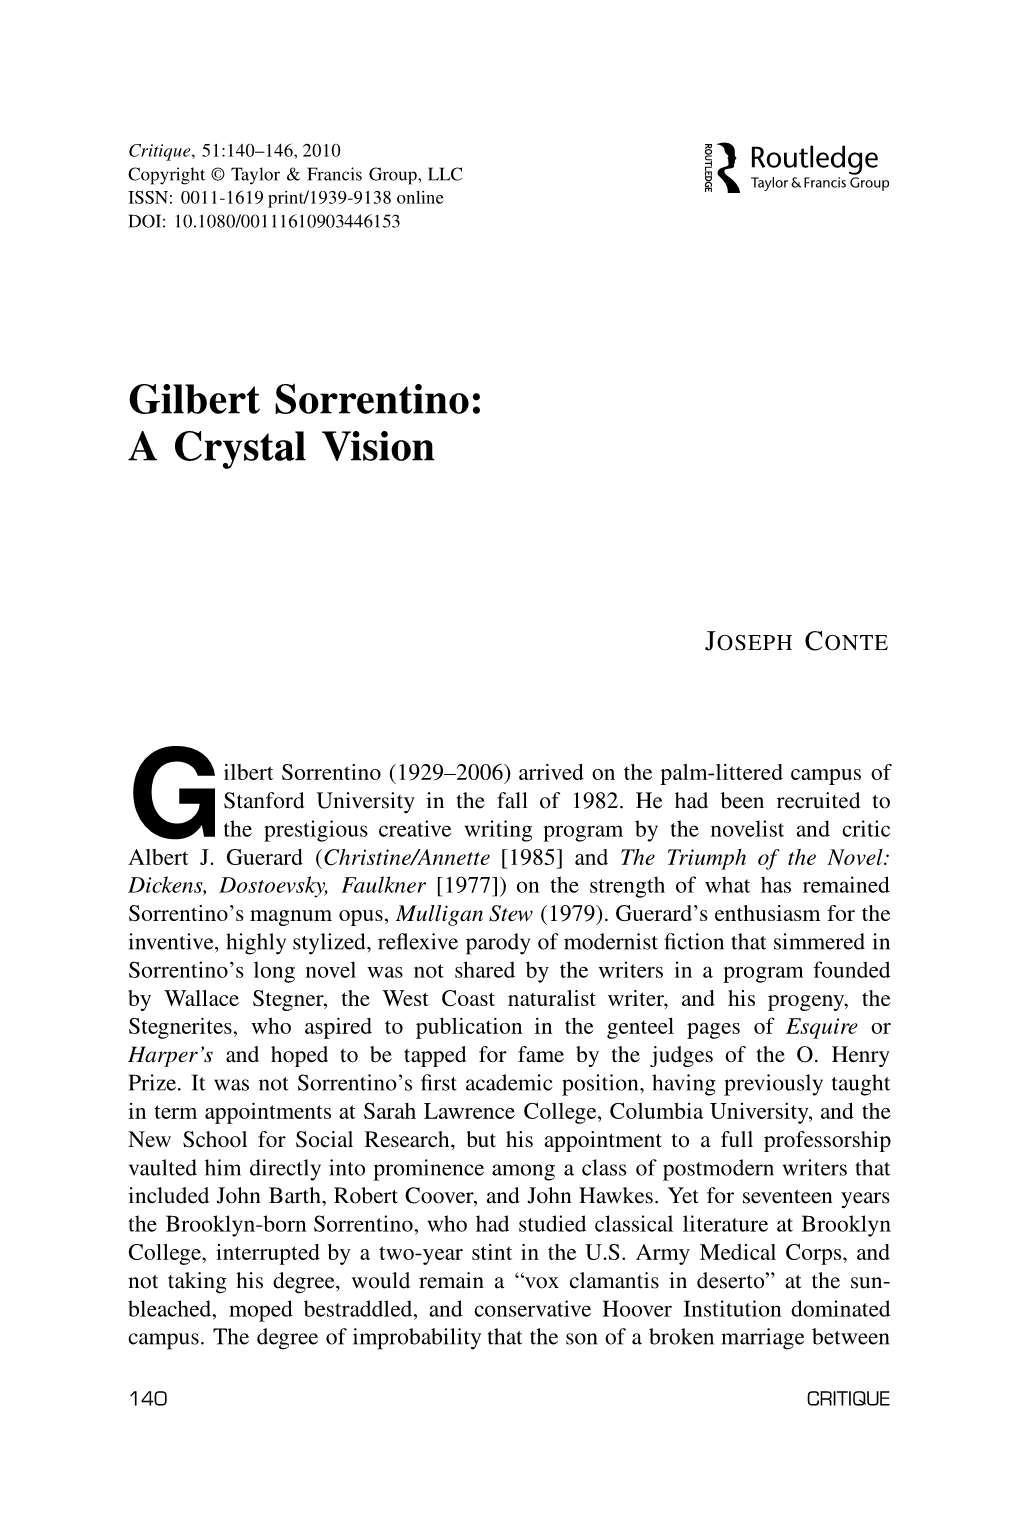 Gilbert Sorrentino: a Crystal Vision